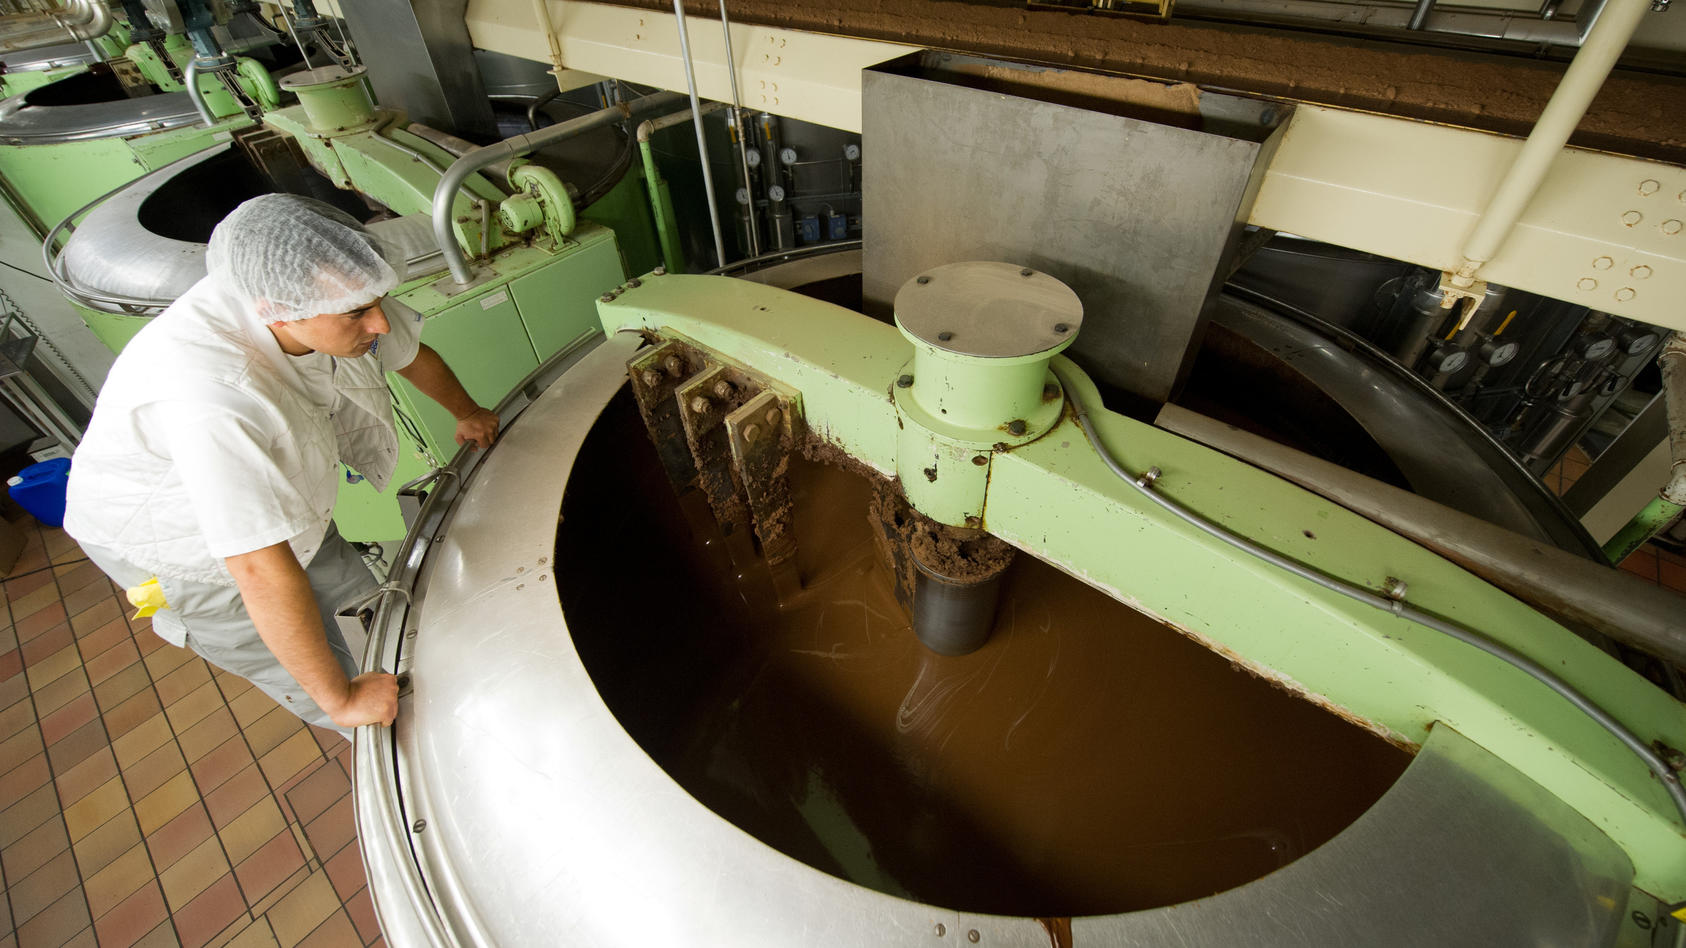 Ein Mitarbeiter des Schokoladenherstellers Ritter (Ritter Sport ) kontrolliert am Dienstag (26.06.2012) in der Produktion des Schokoladeherstellers Ritter (Ritter Sport ) in der Firmenzentrale in Waldenbuch (Landkreis Böblingen) Schokoladen-Rohmasse.